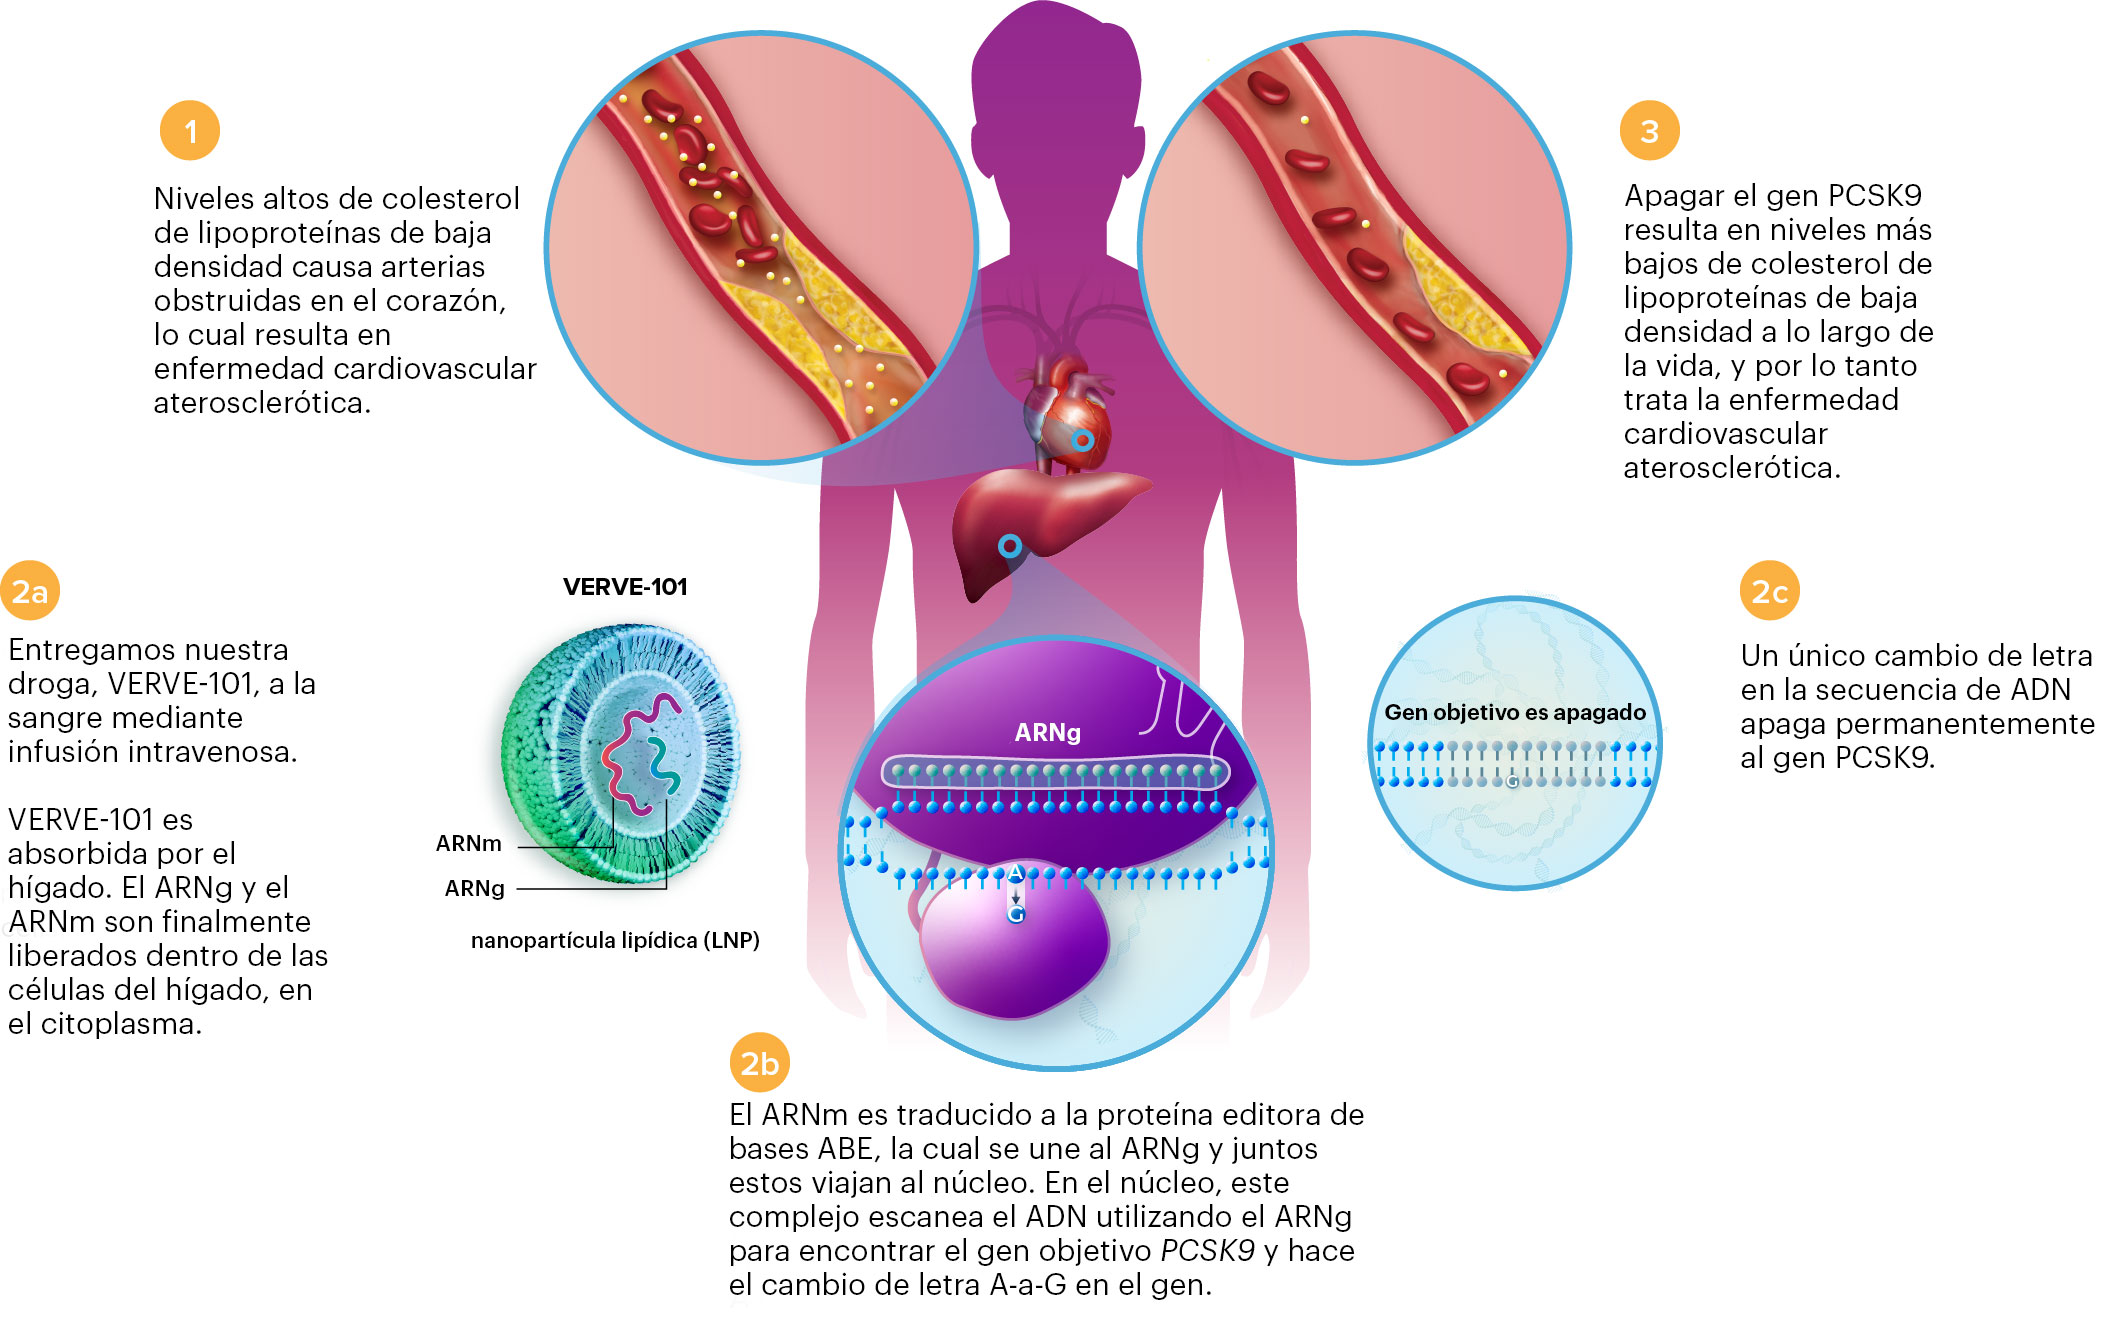 Descripción general del tratamiento de la hipercolesterolemia con componentes CRISPR administrados por nanopartículas lipídicas